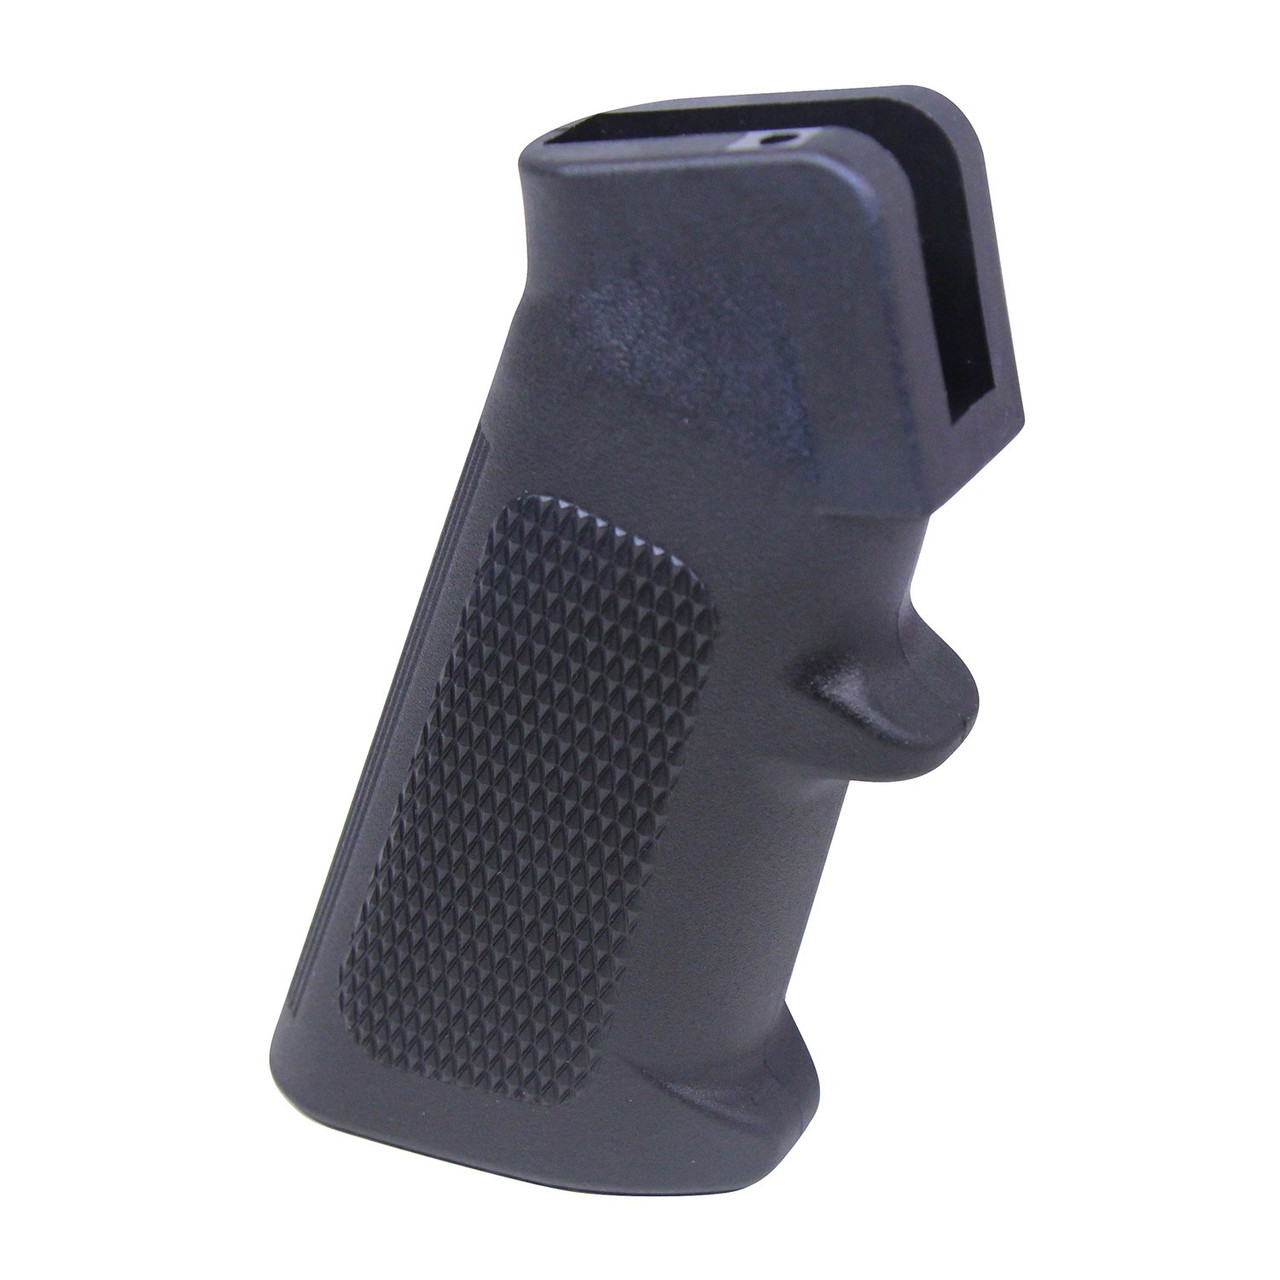 Guntec USA A2-GRIP A2 Mil-Spec Polymer Grip